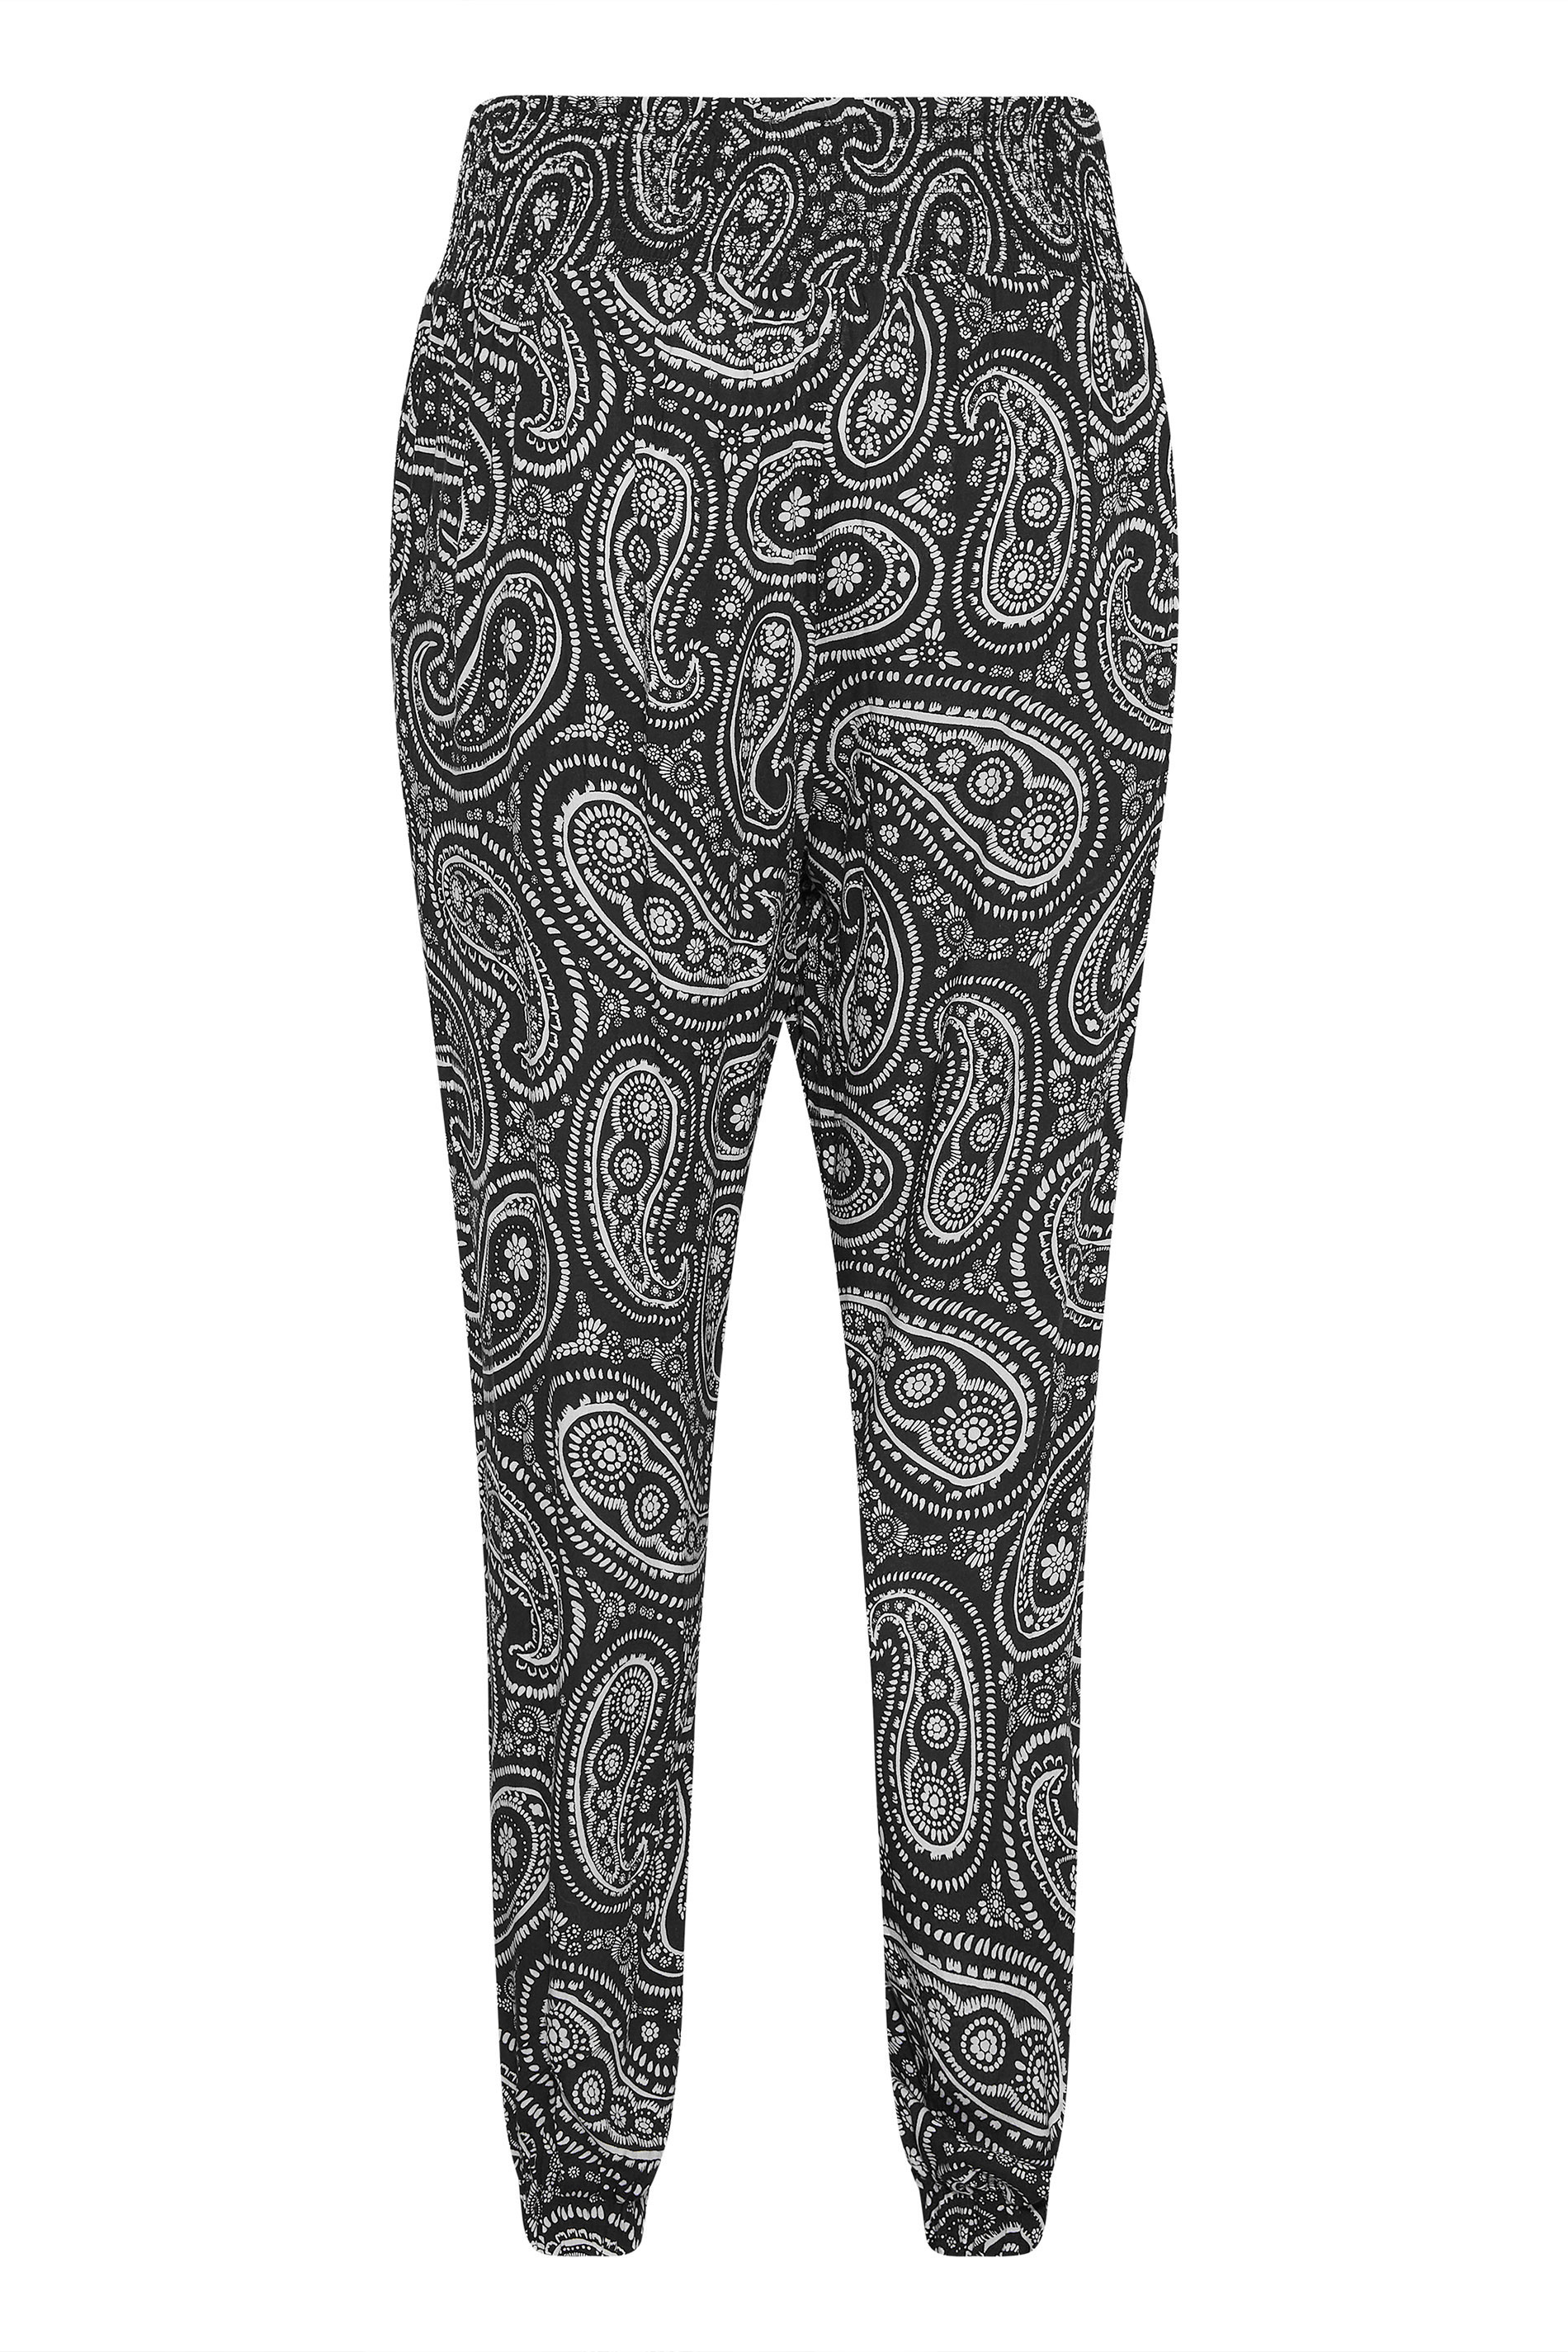 Grande taille  Pantalons Grande taille  Joggings | Jogging Noir Imprimé Paisley - NQ62849